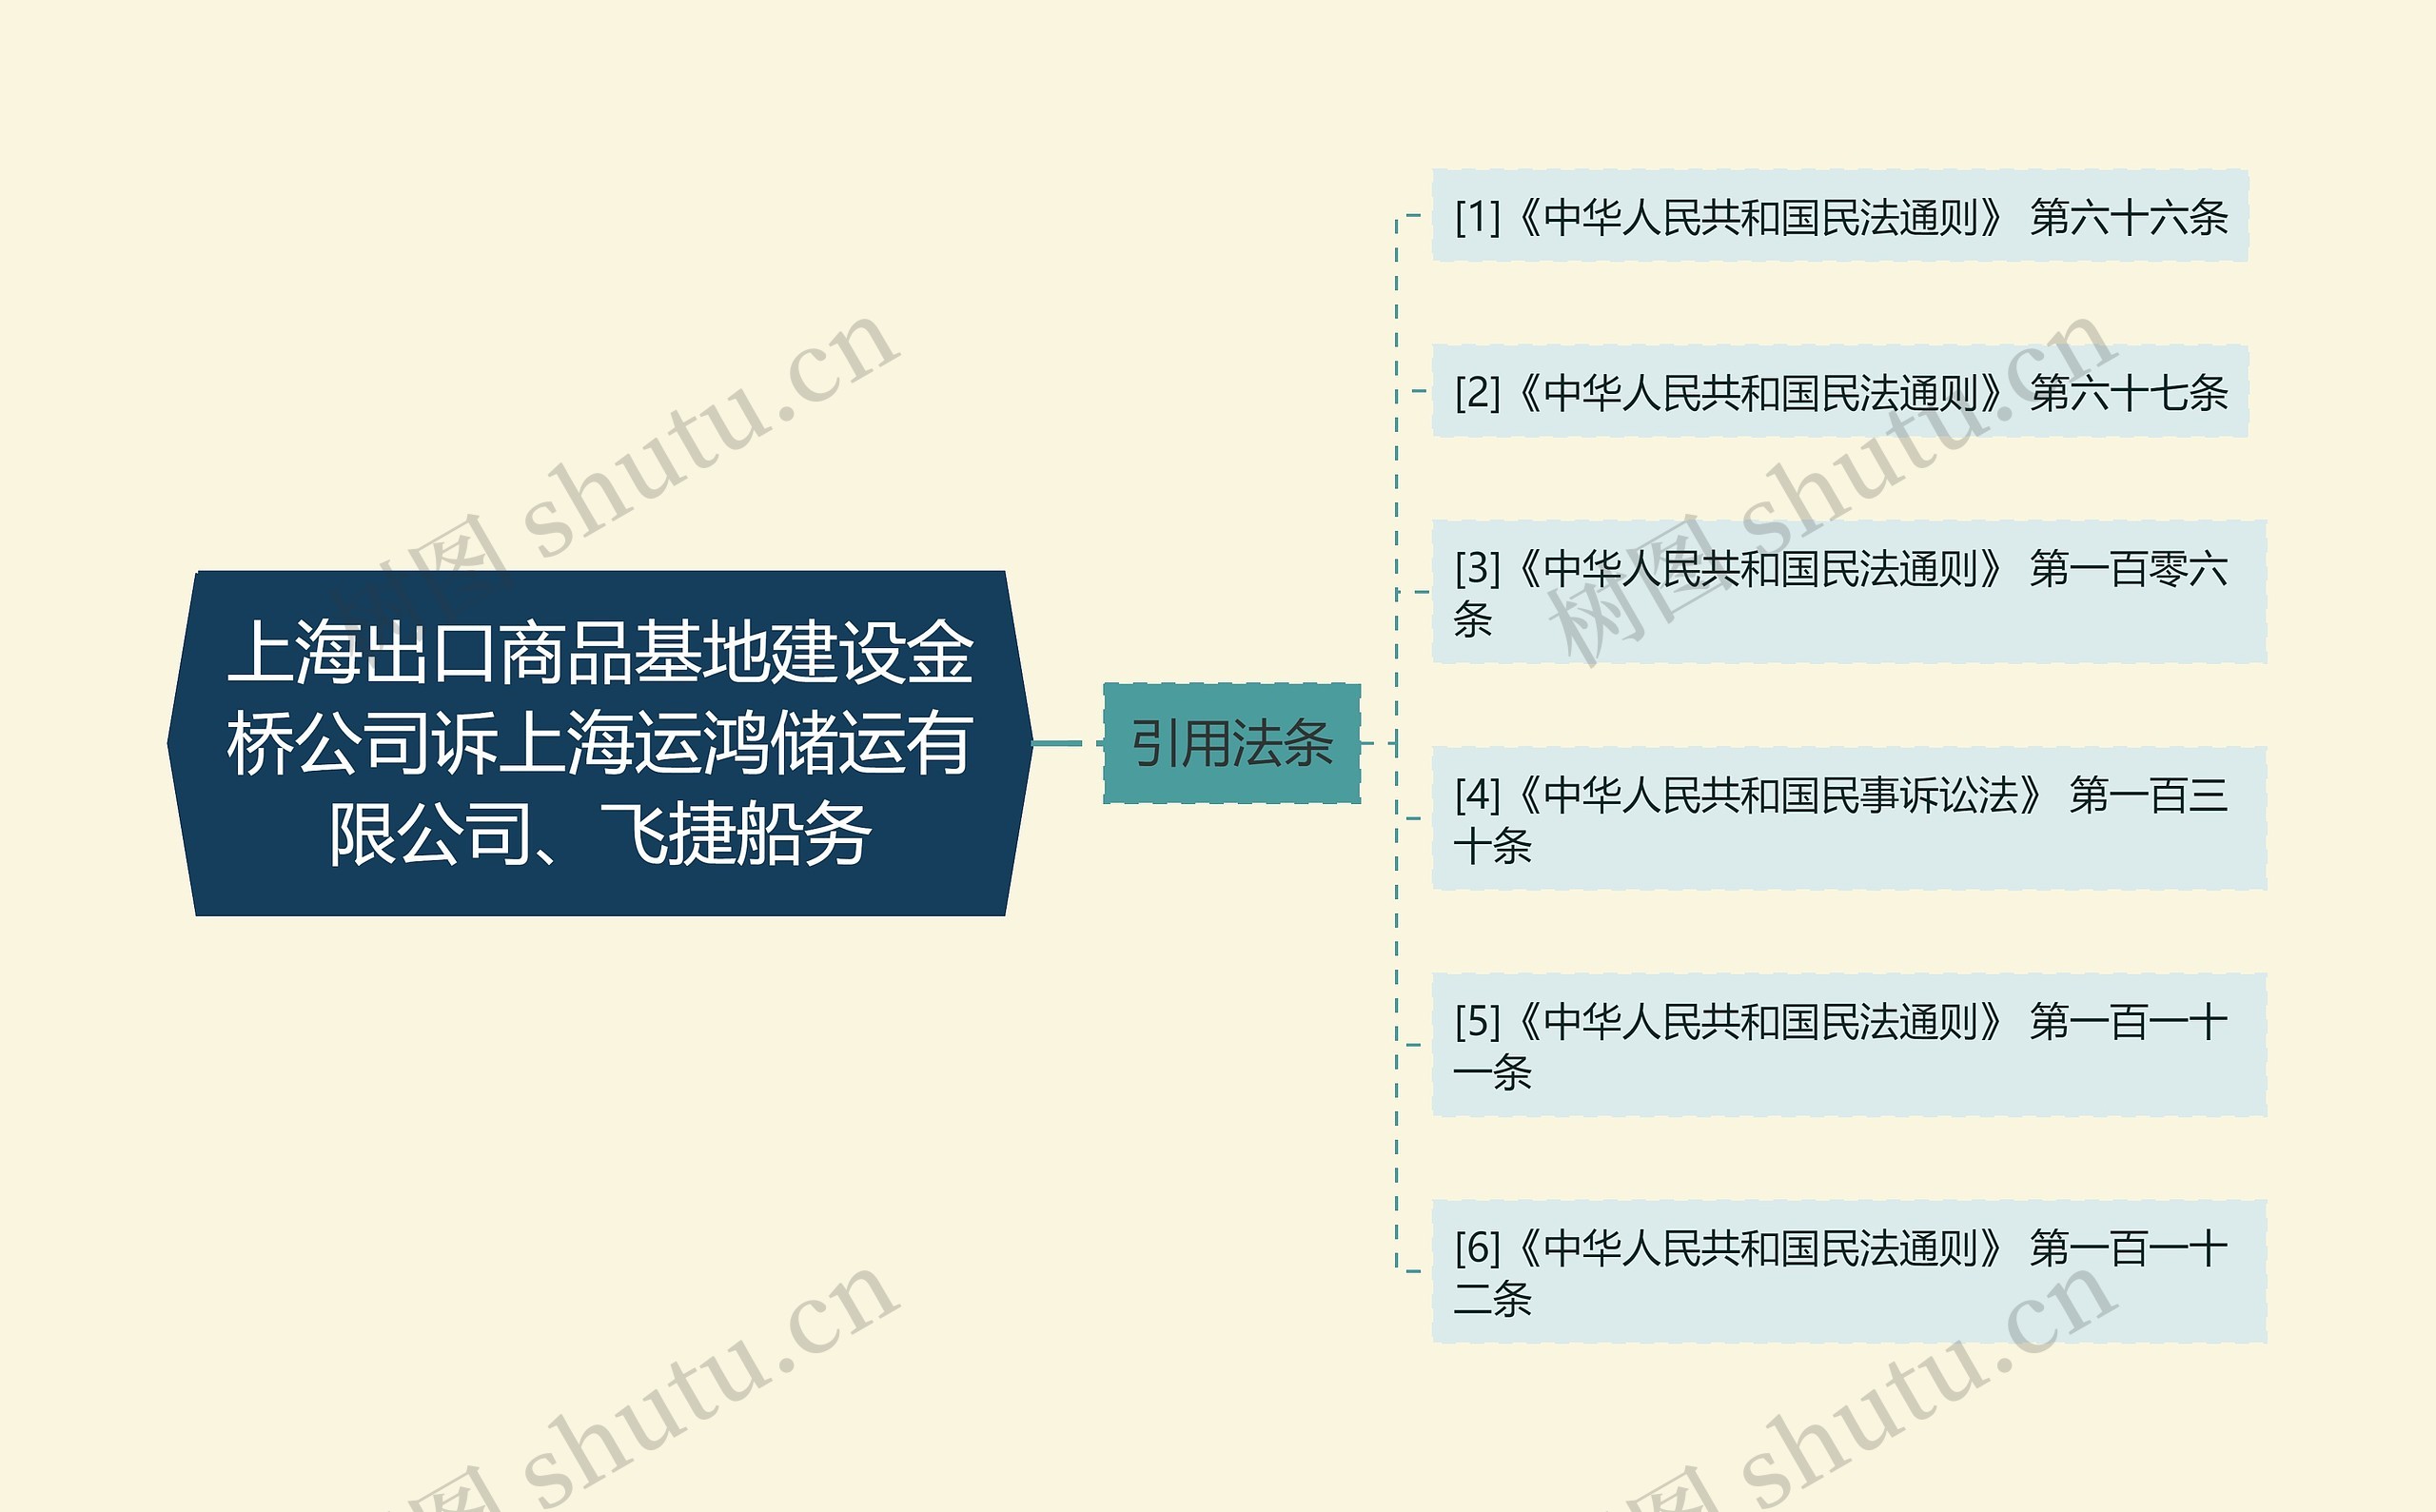 上海出口商品基地建设金桥公司诉上海运鸿储运有限公司、飞捷船务